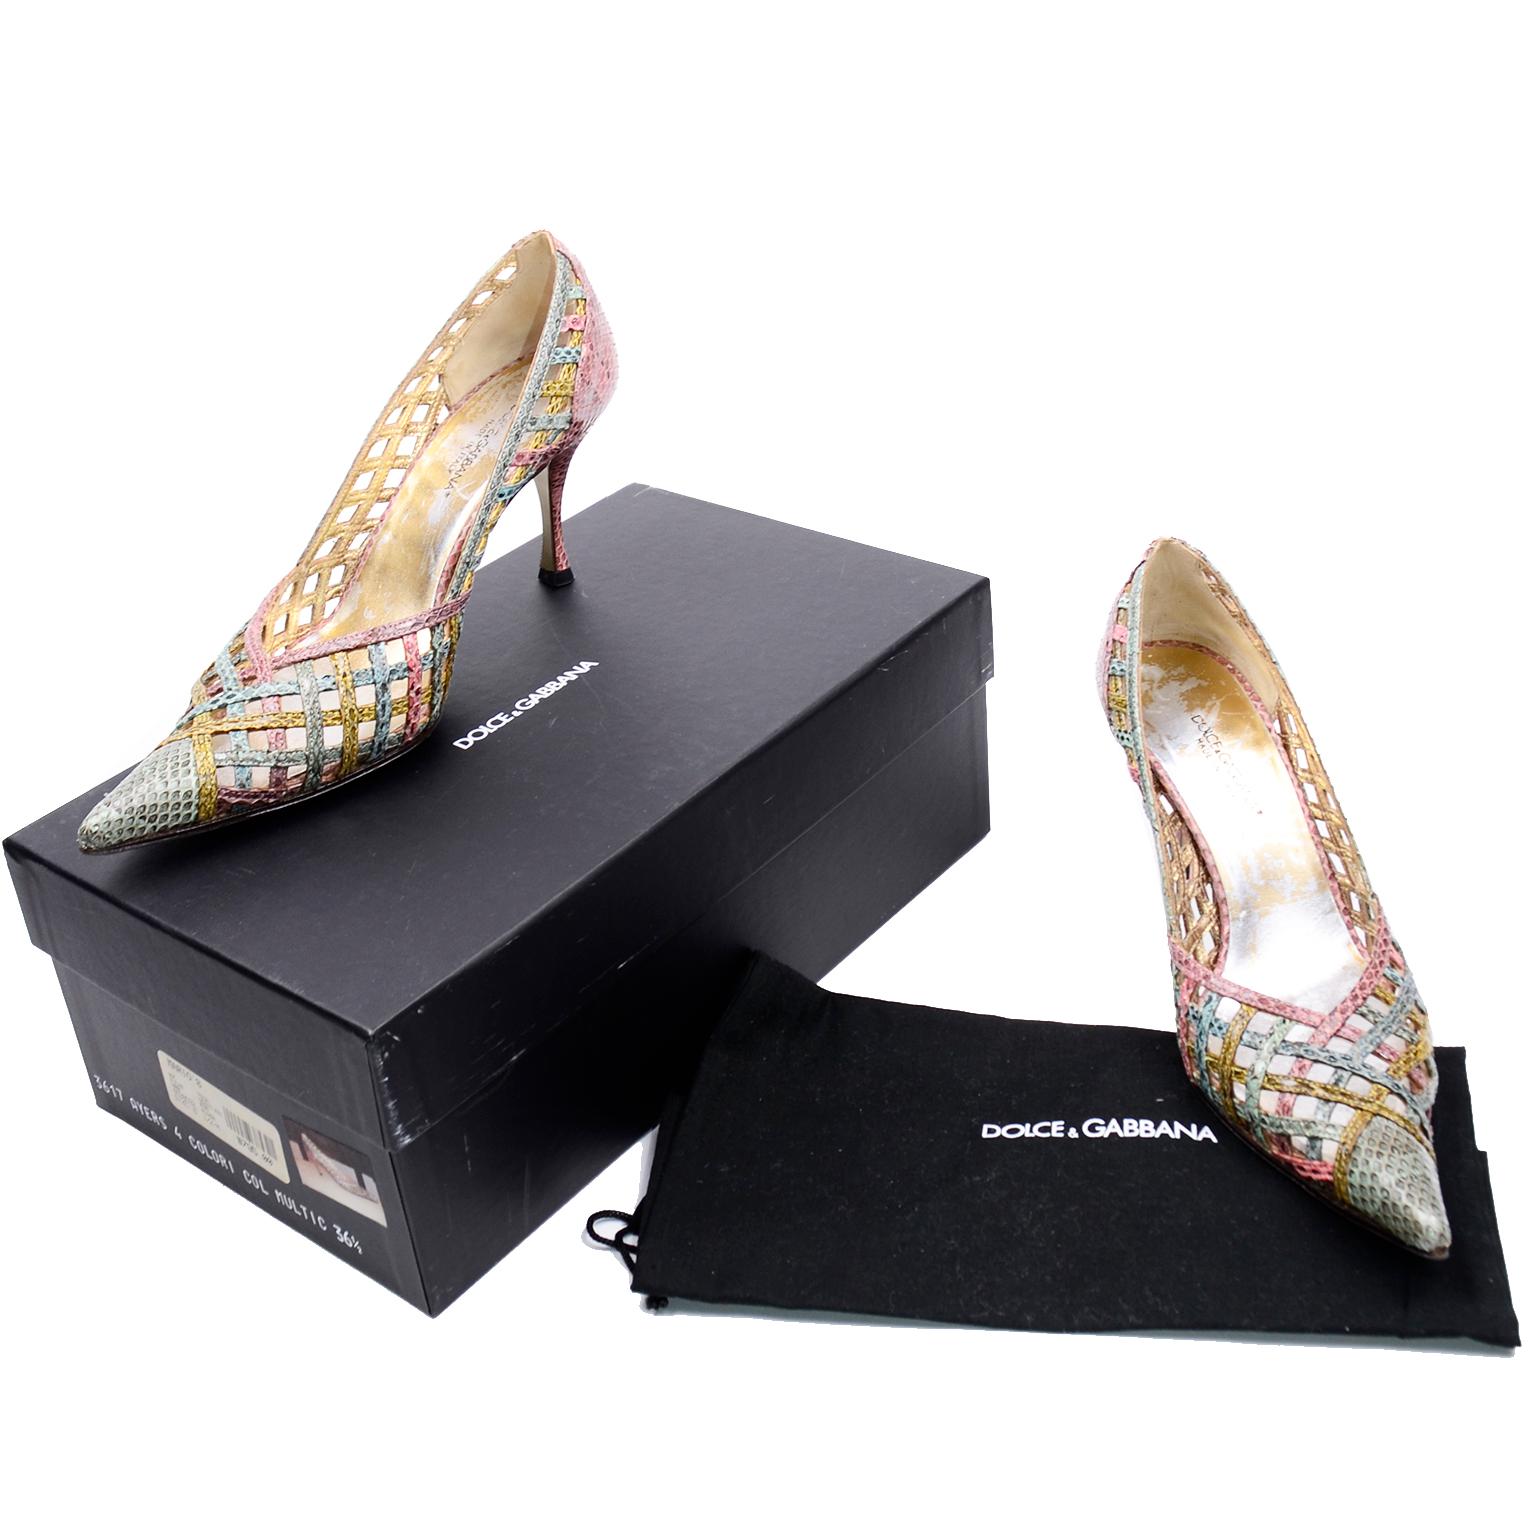 Ces chaussures à bout pointu Dolce & Gabbana sont magnifiquement tissées avec de la peau de serpent multicolore dans des tons de rose, violet, vert et bleu. Ces superbes escarpins sont livrés dans leur boîte d'origine avec les étiquettes et leur sac